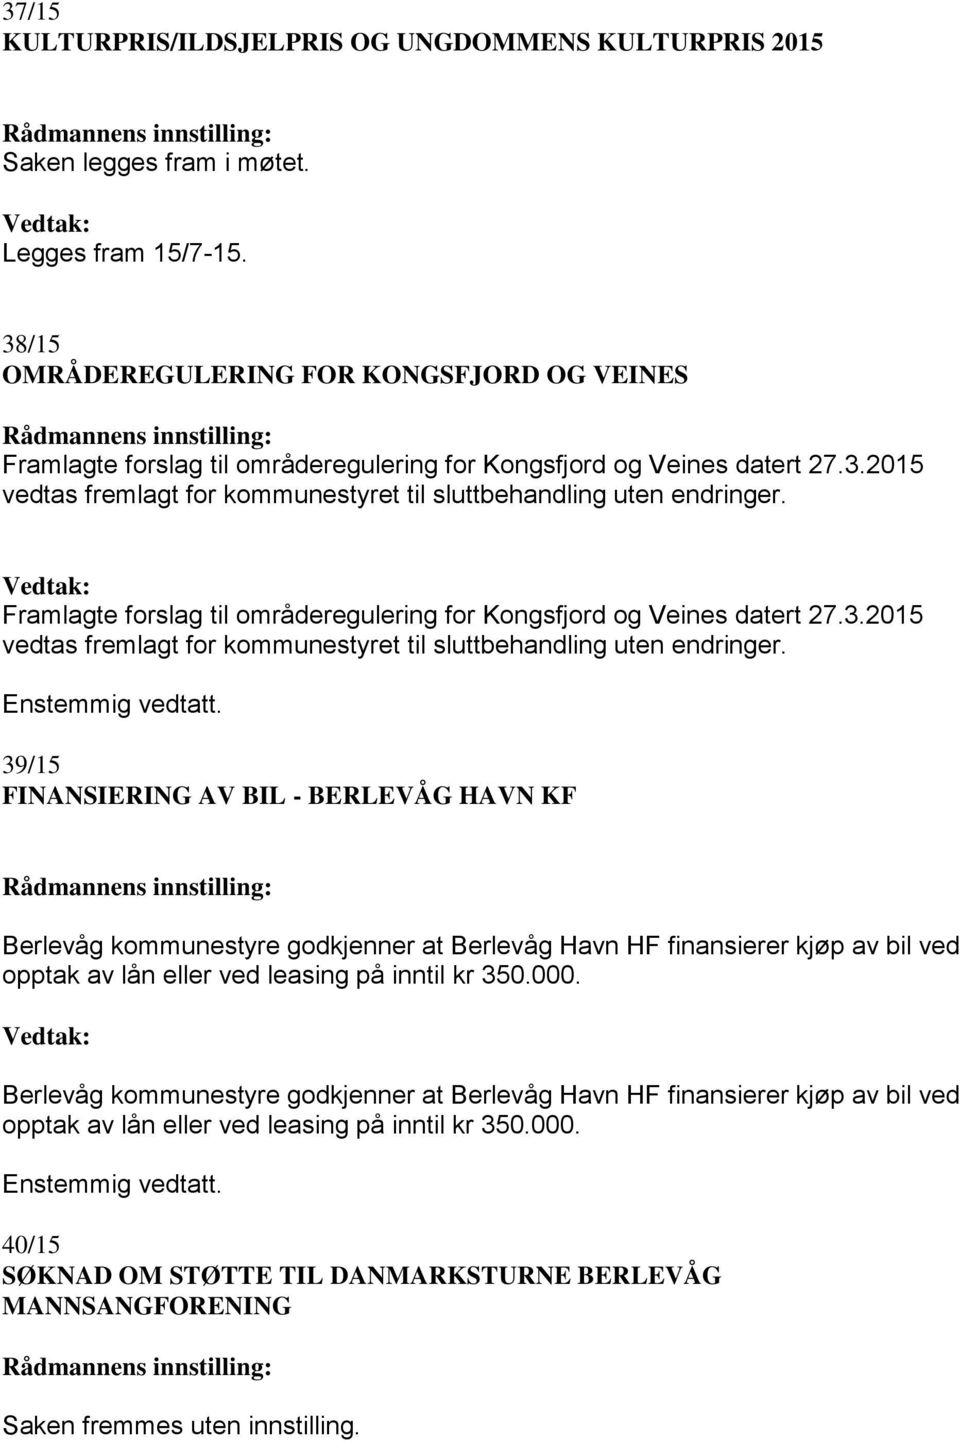 Framlagte forslag til områderegulering for Kongsfjord og Veines datert 27.3.2015 vedtas fremlagt for kommunestyret til sluttbehandling uten endringer.